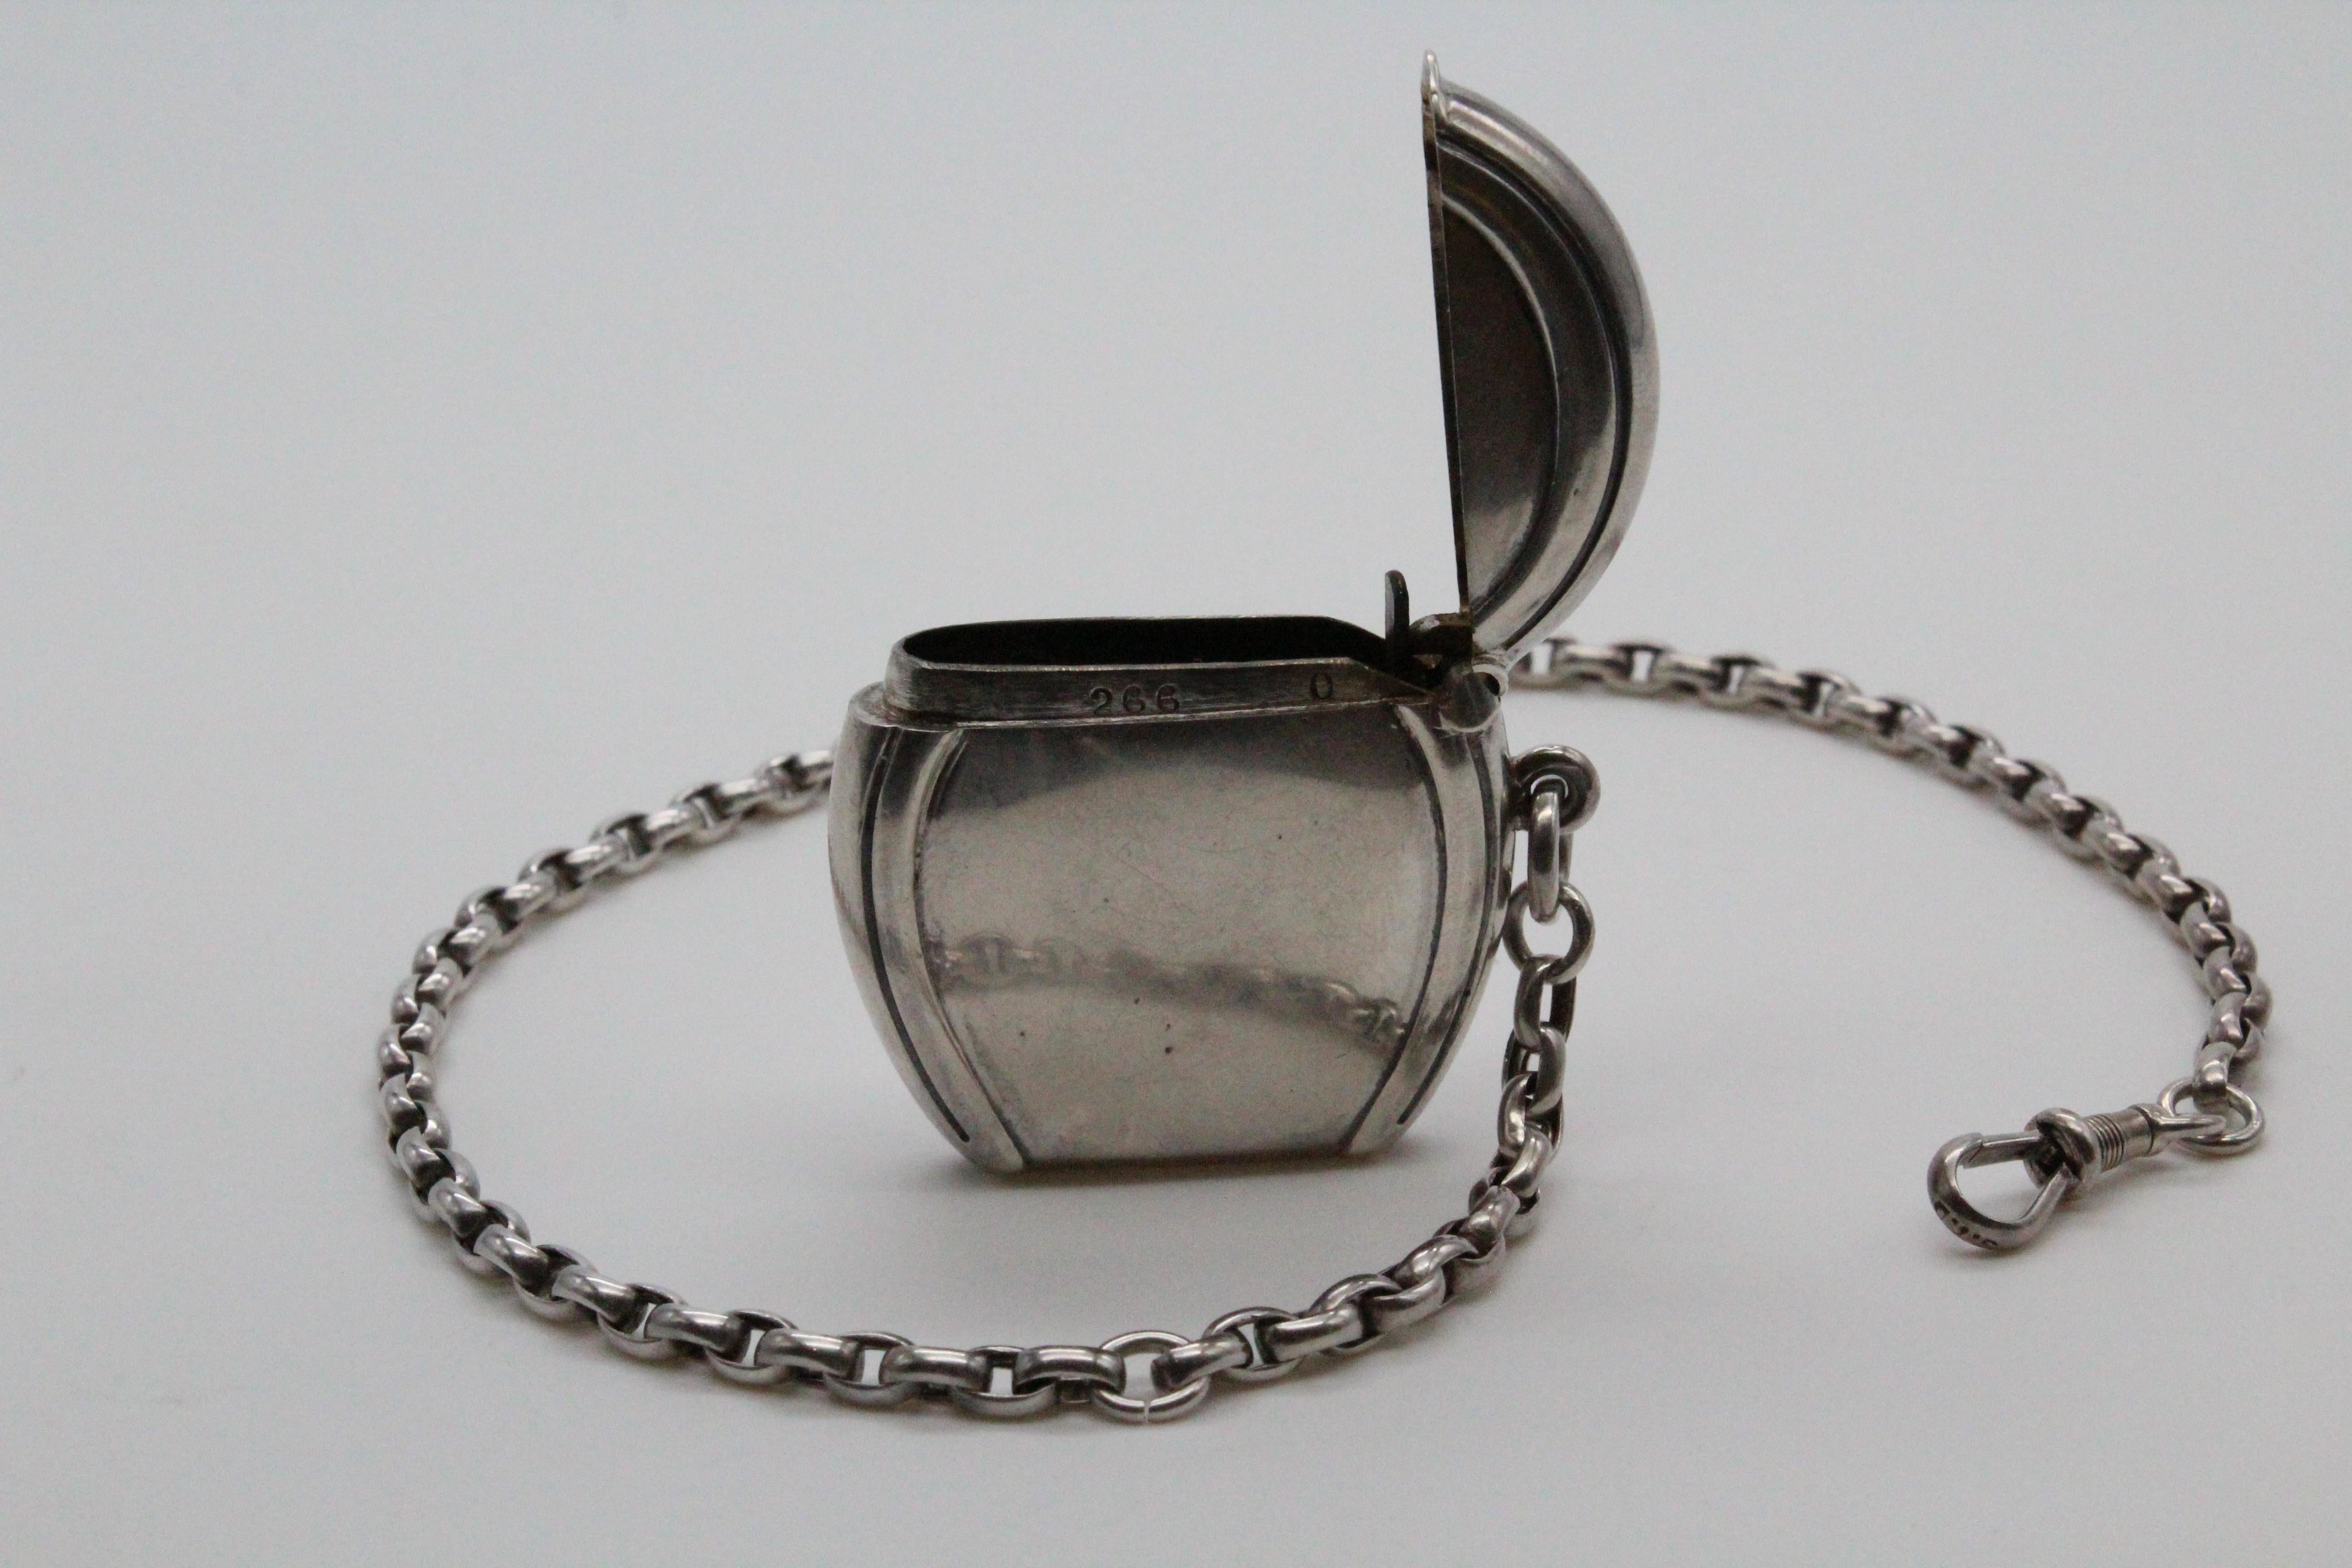 Streichholzhalter aus Sterlingsilber, USA-Marken mit Silberkette.
Die Kette ist 38 cm lang.